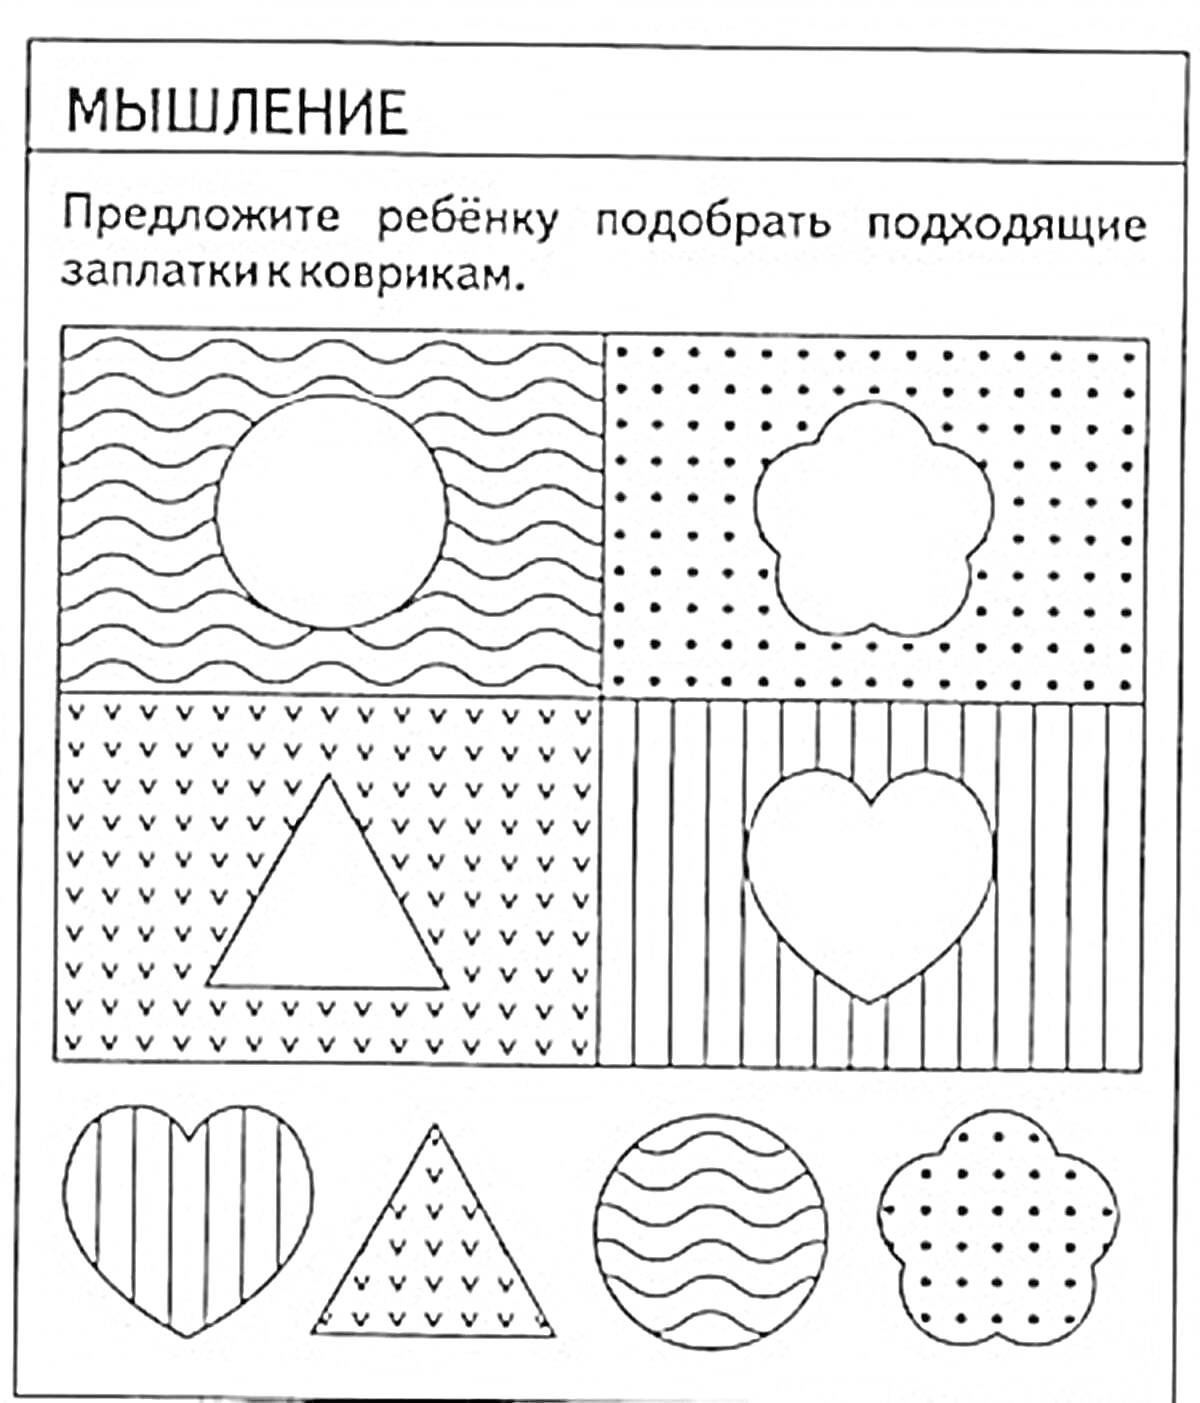 Раскраска Подбор заплаток к коврикам (волнистая линия-круг, точки-цветок, волнистая линия-круг в полоске, маленькие треугольники-треугольник, вертикальные линии-сердце)